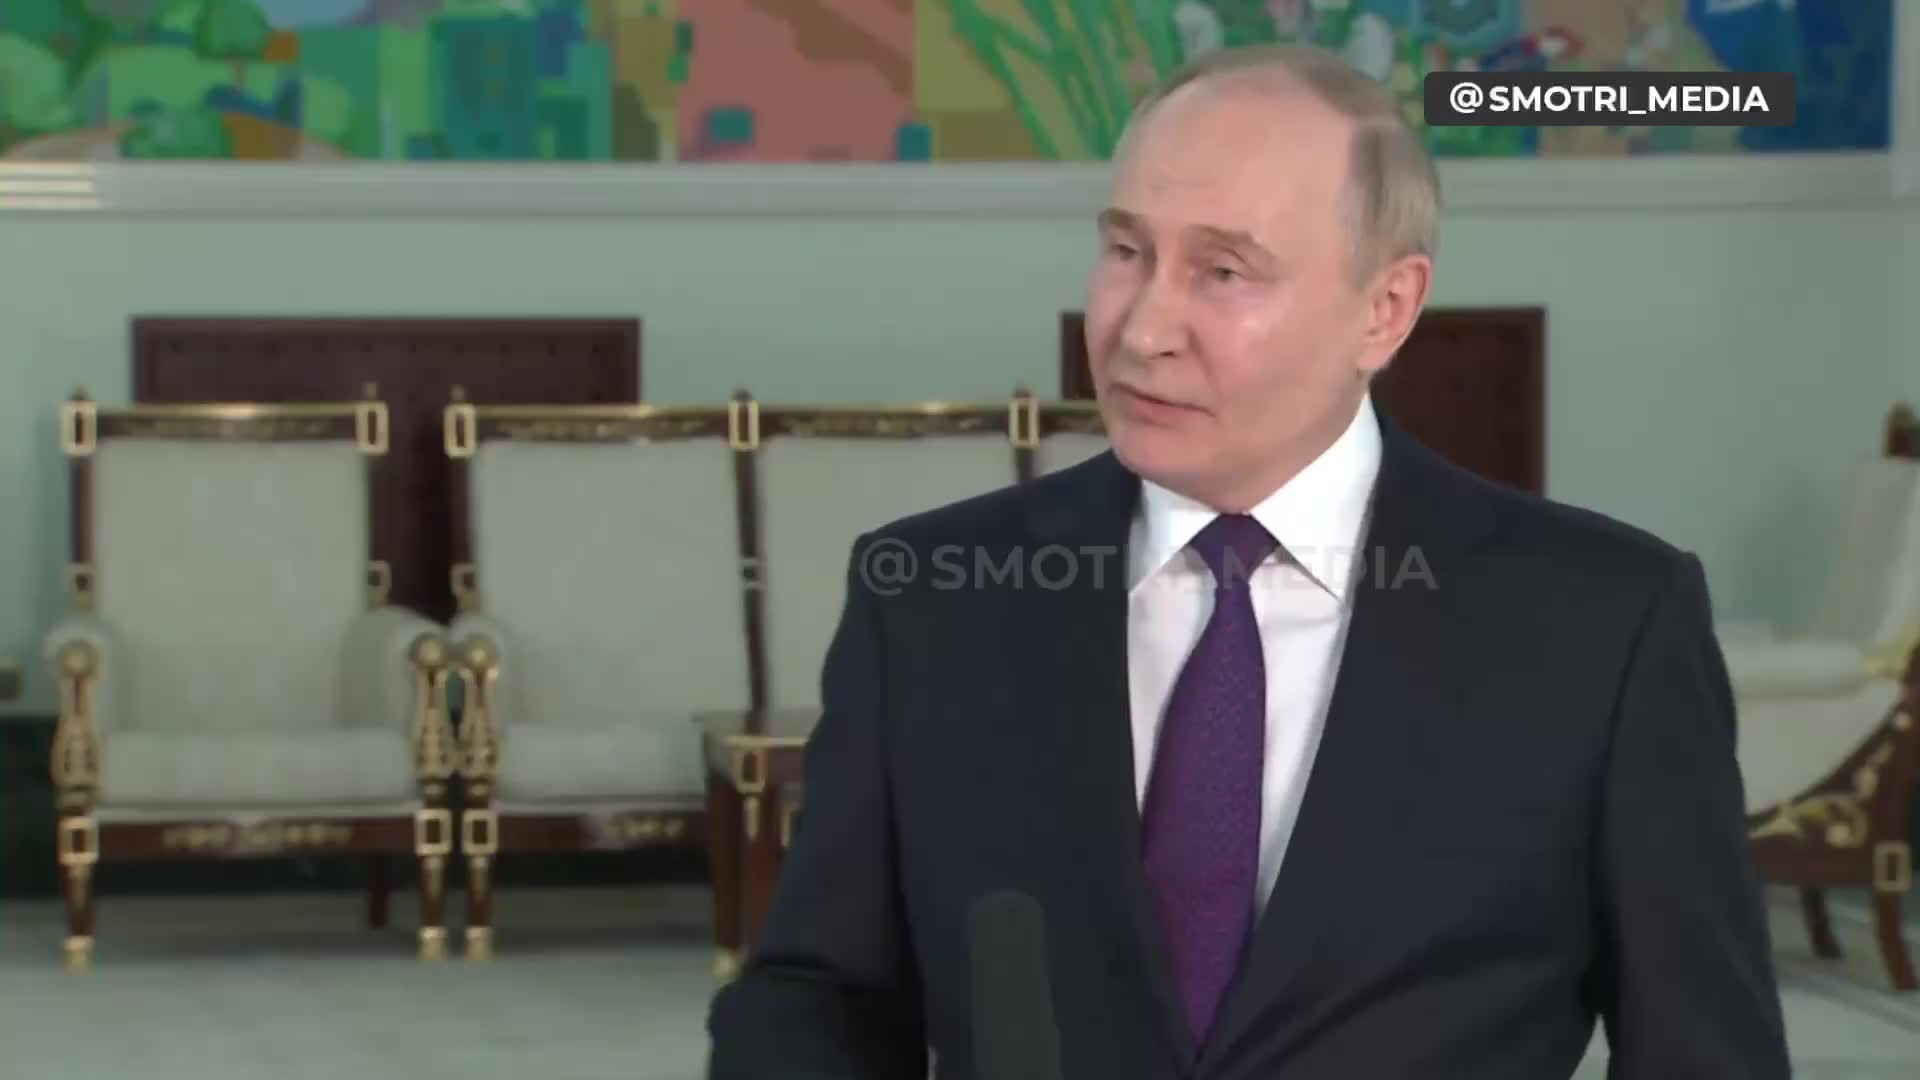 Poutine promet que la Russie fera ce qu'elle a prévu, quelles que soient les troupes en Ukraine